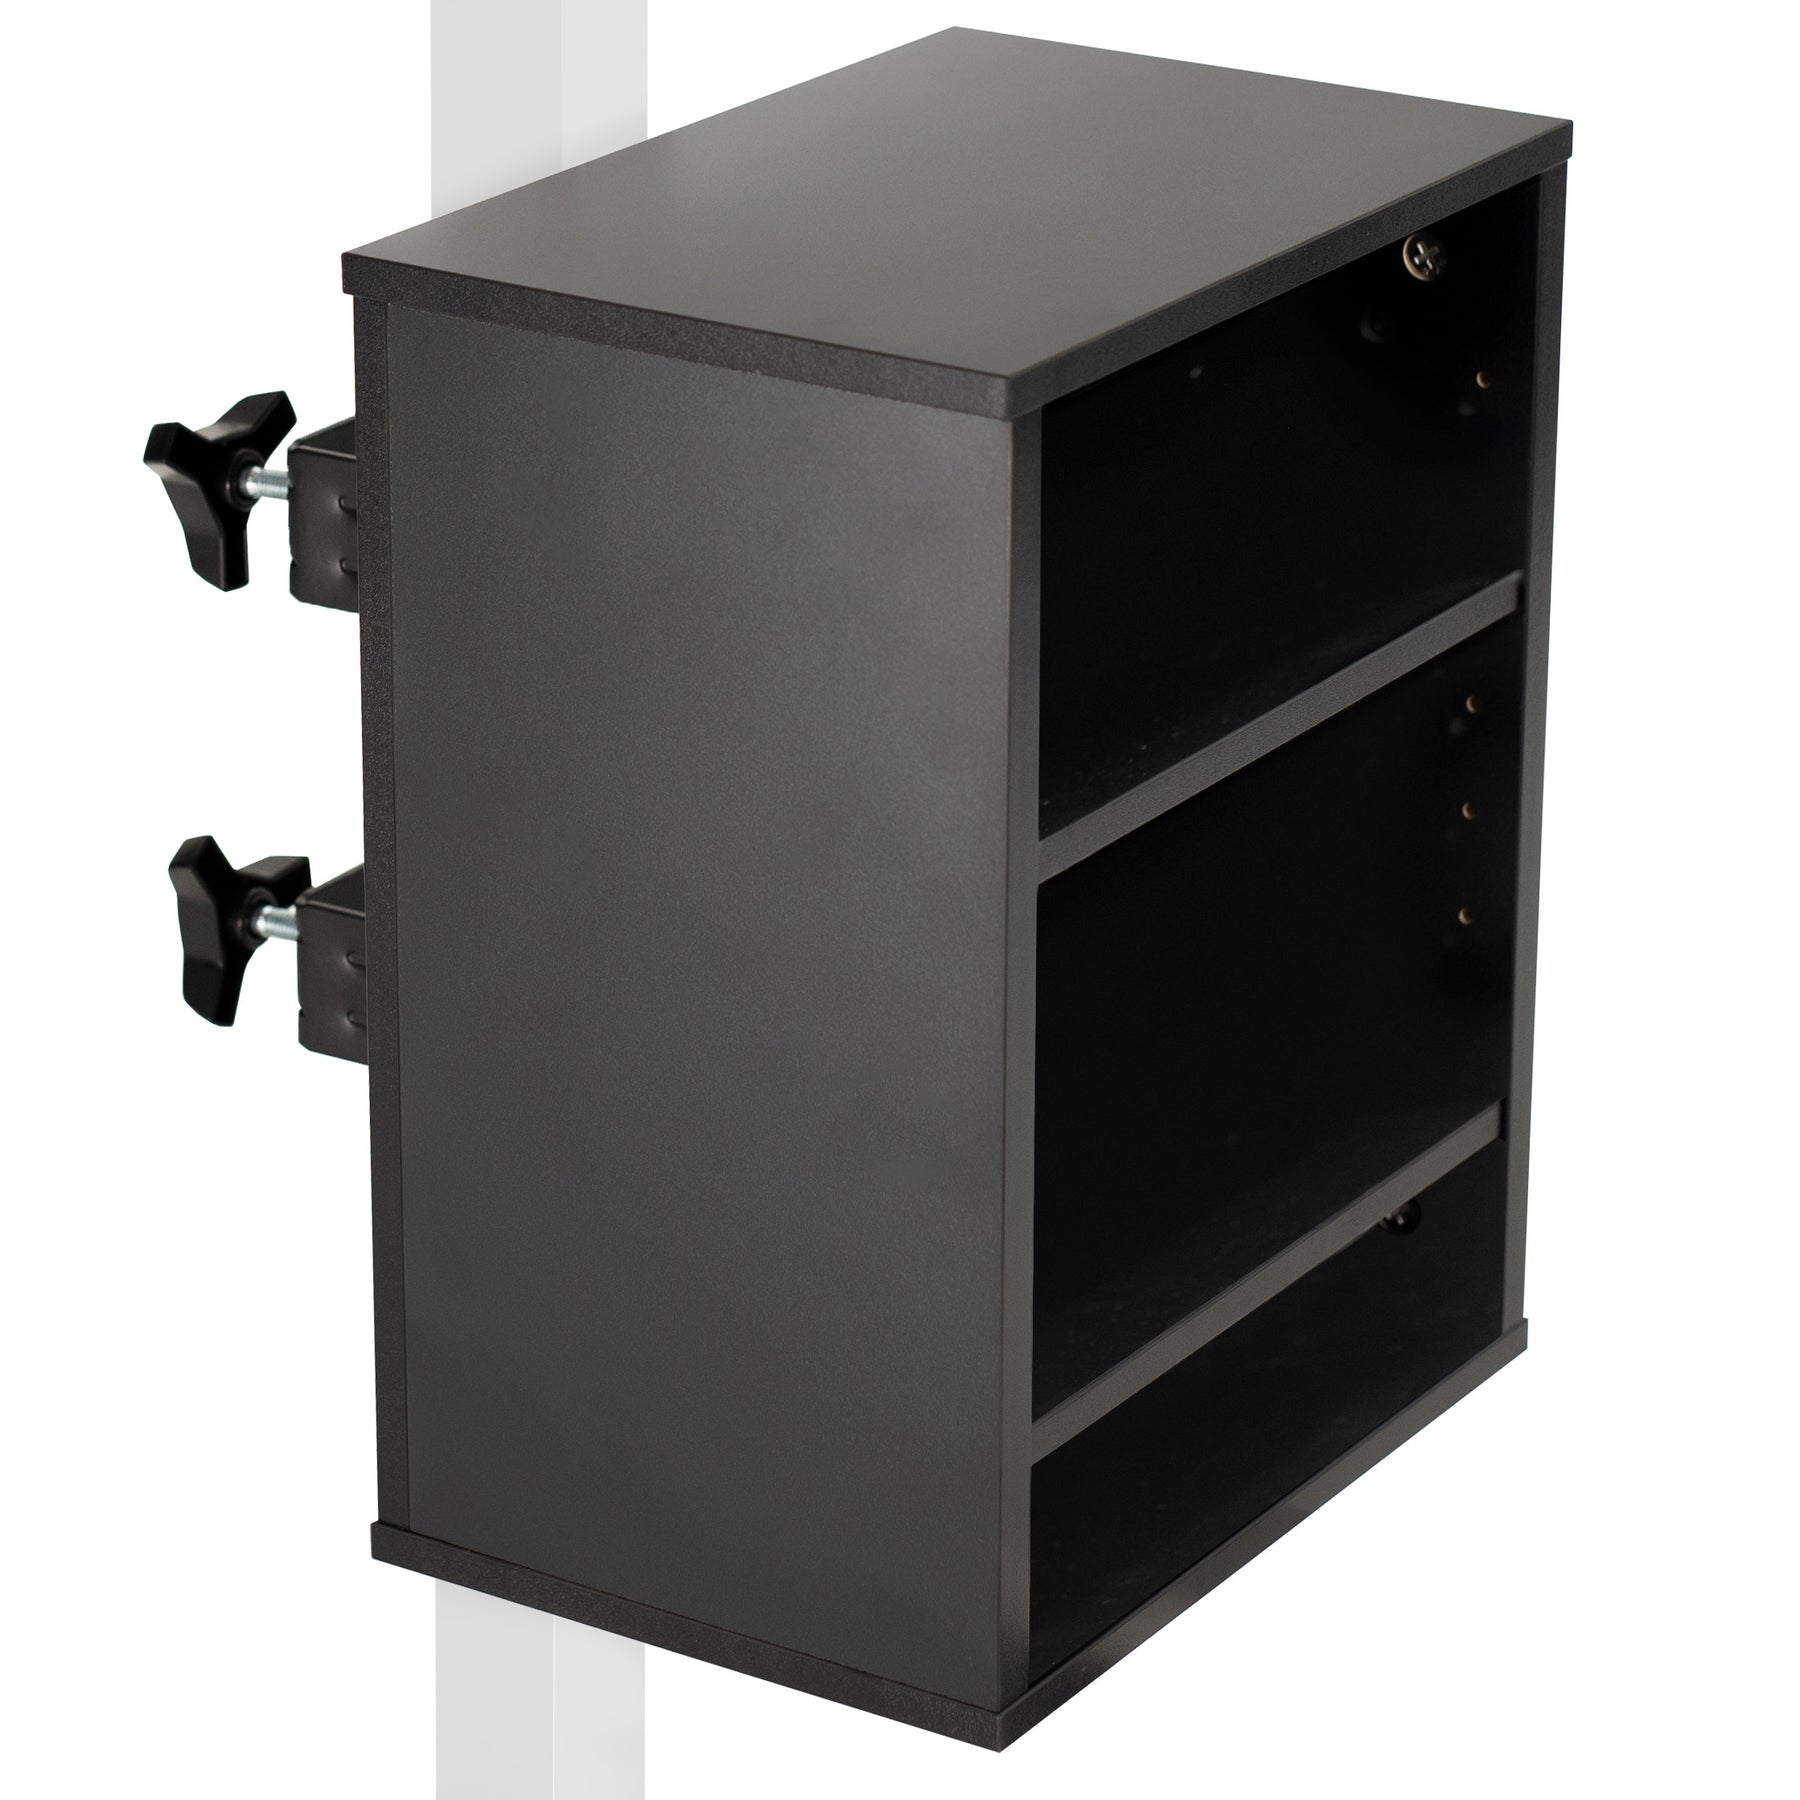 Black 50” Clamp-on Desktop Shelving System